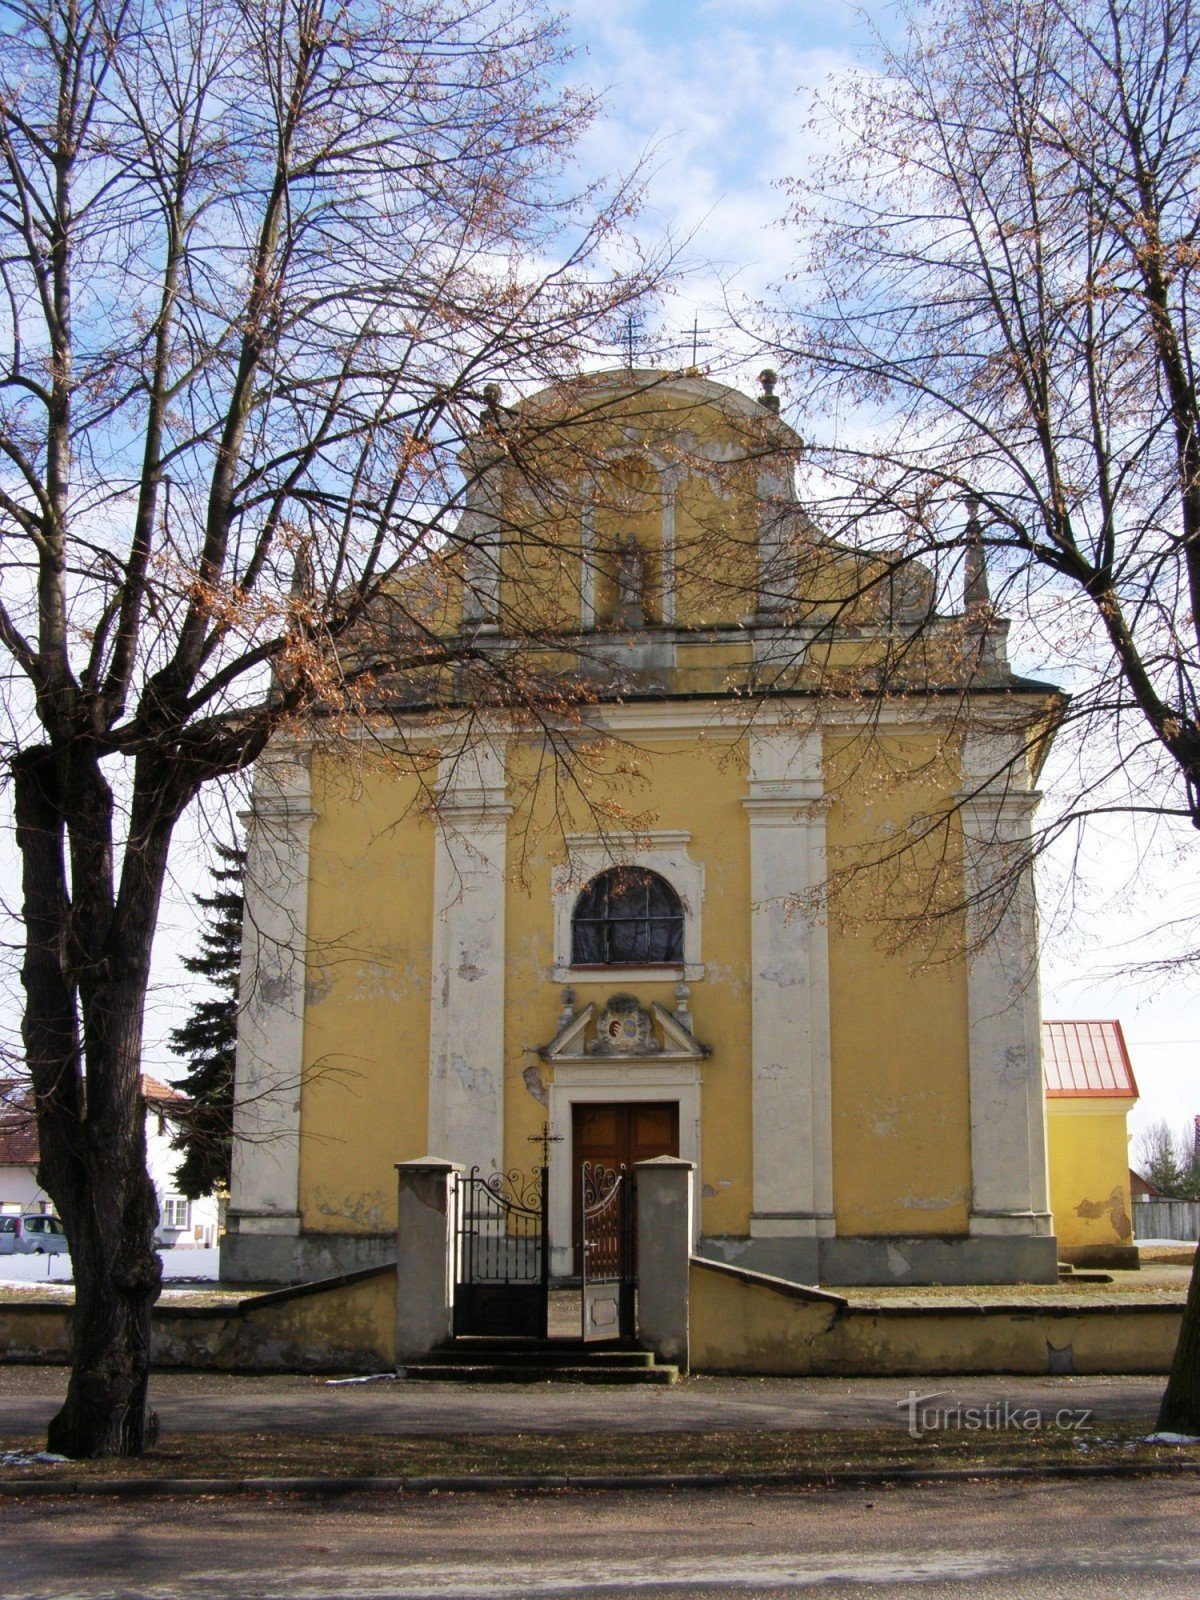 Lovčice - Iglesia de St. Bartolomé con el campanario